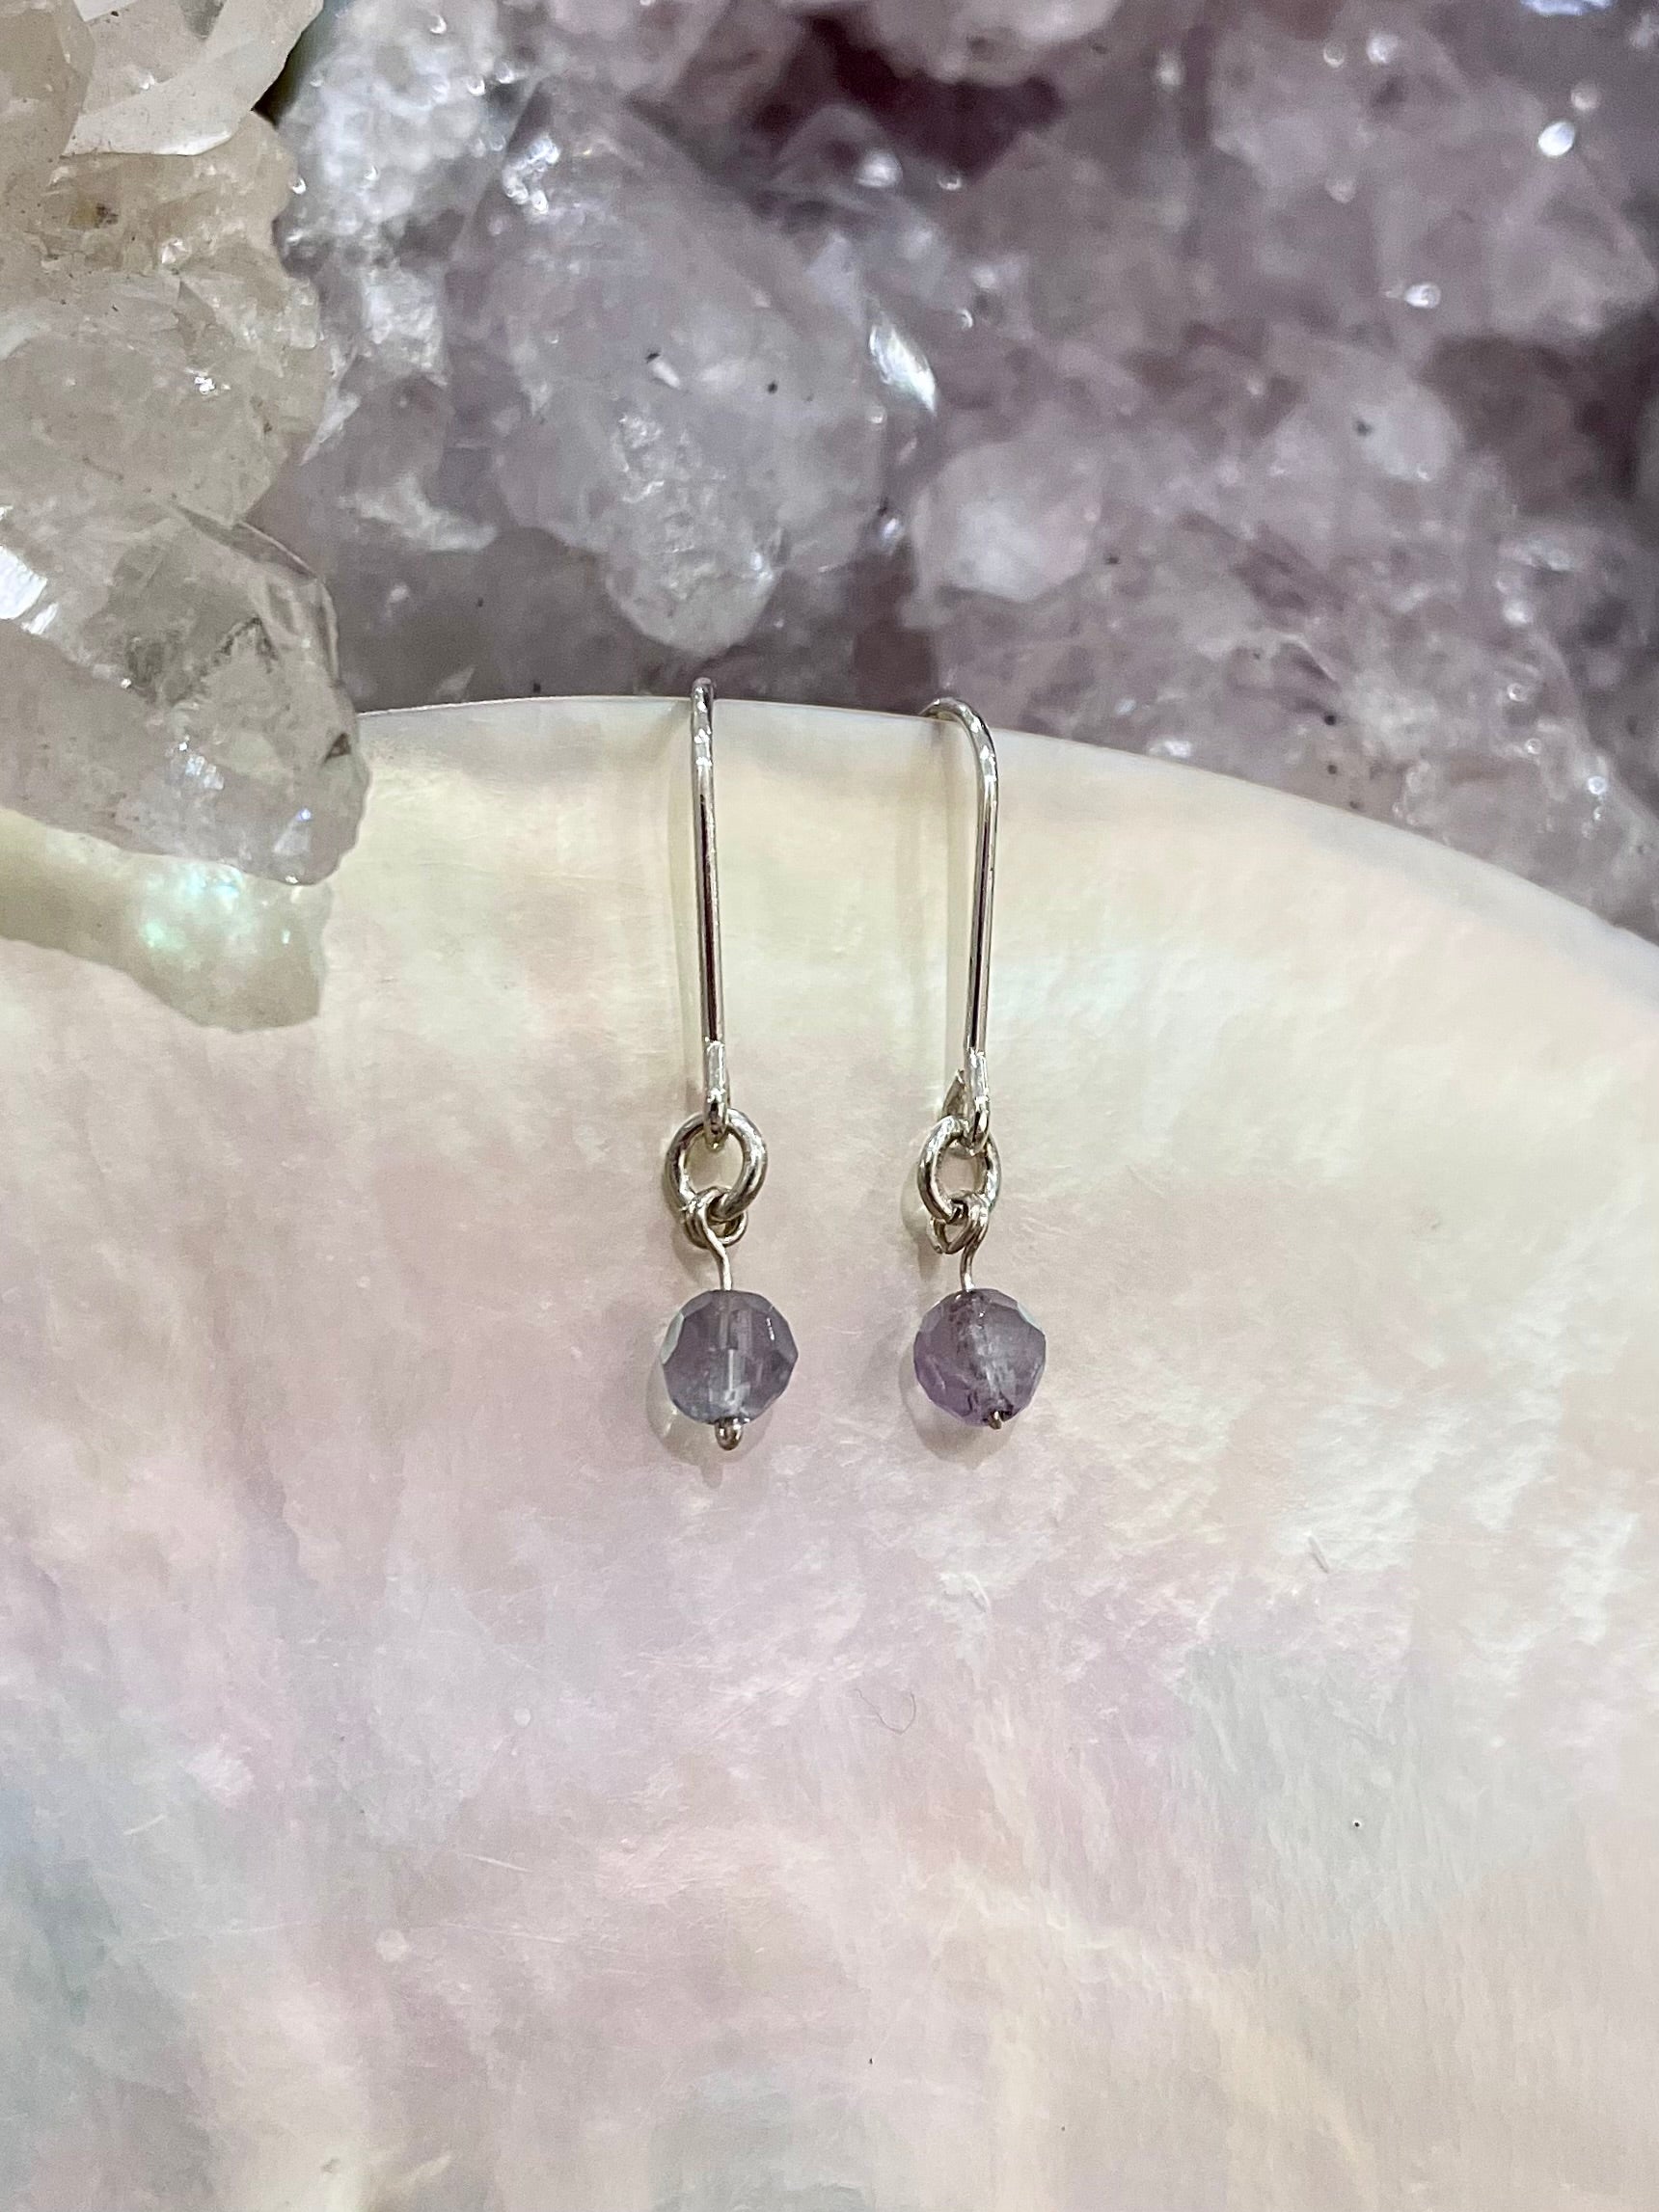 Mini gemstone hook earrings, amethyst earrings silver, ametrine earrings in silver